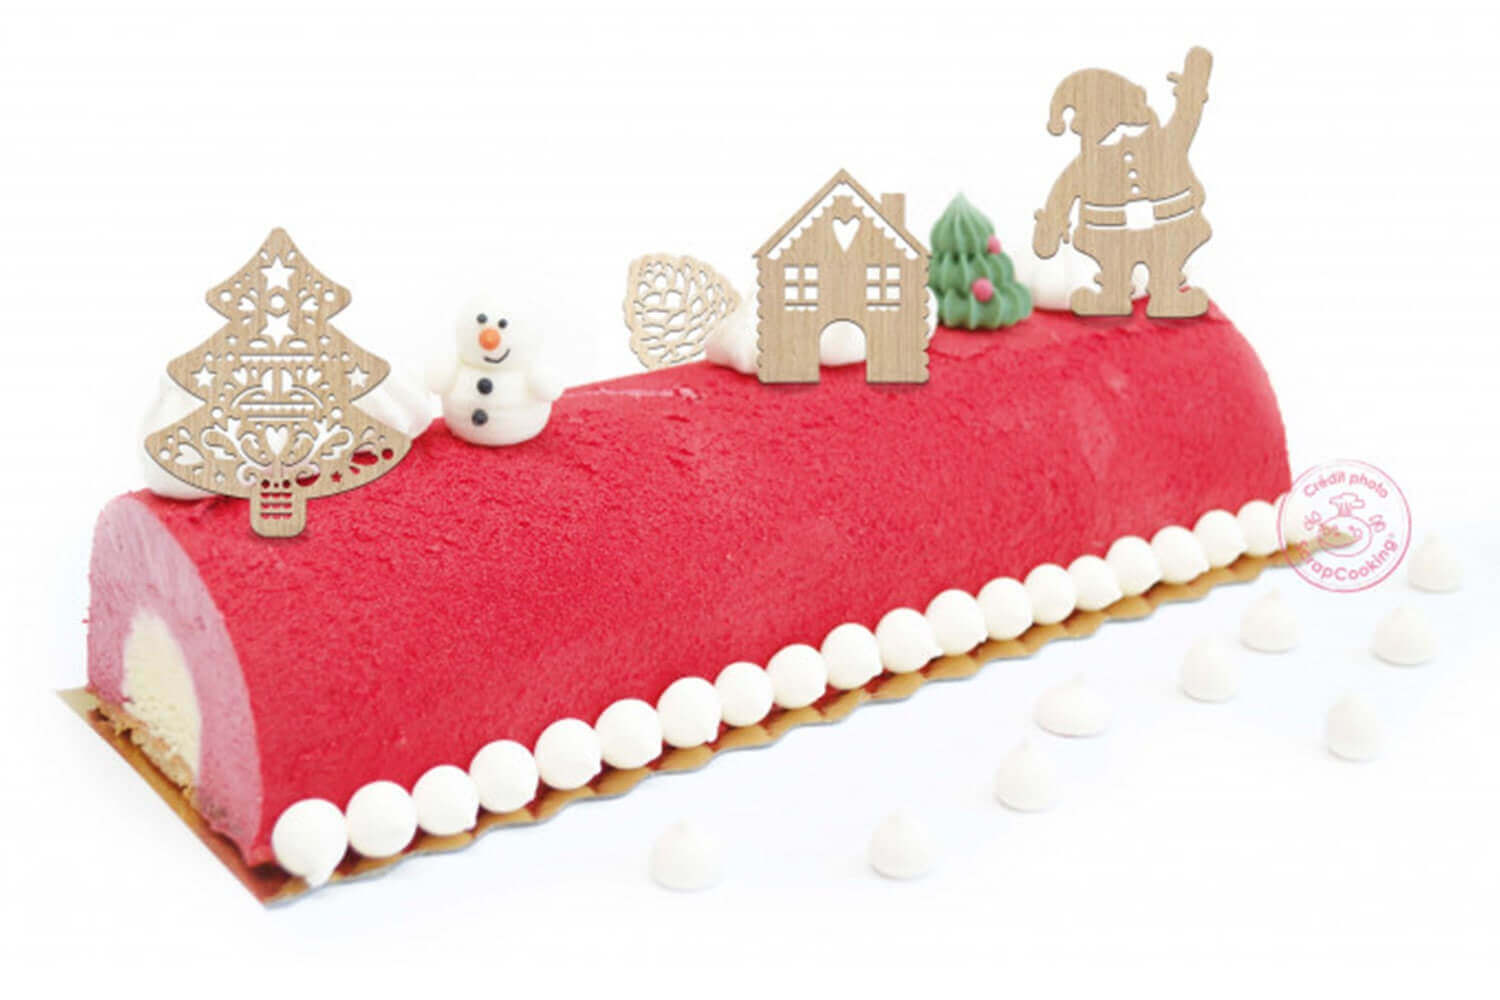 Décor de gâteau et bûche de Noël : 4 décors sur piques en